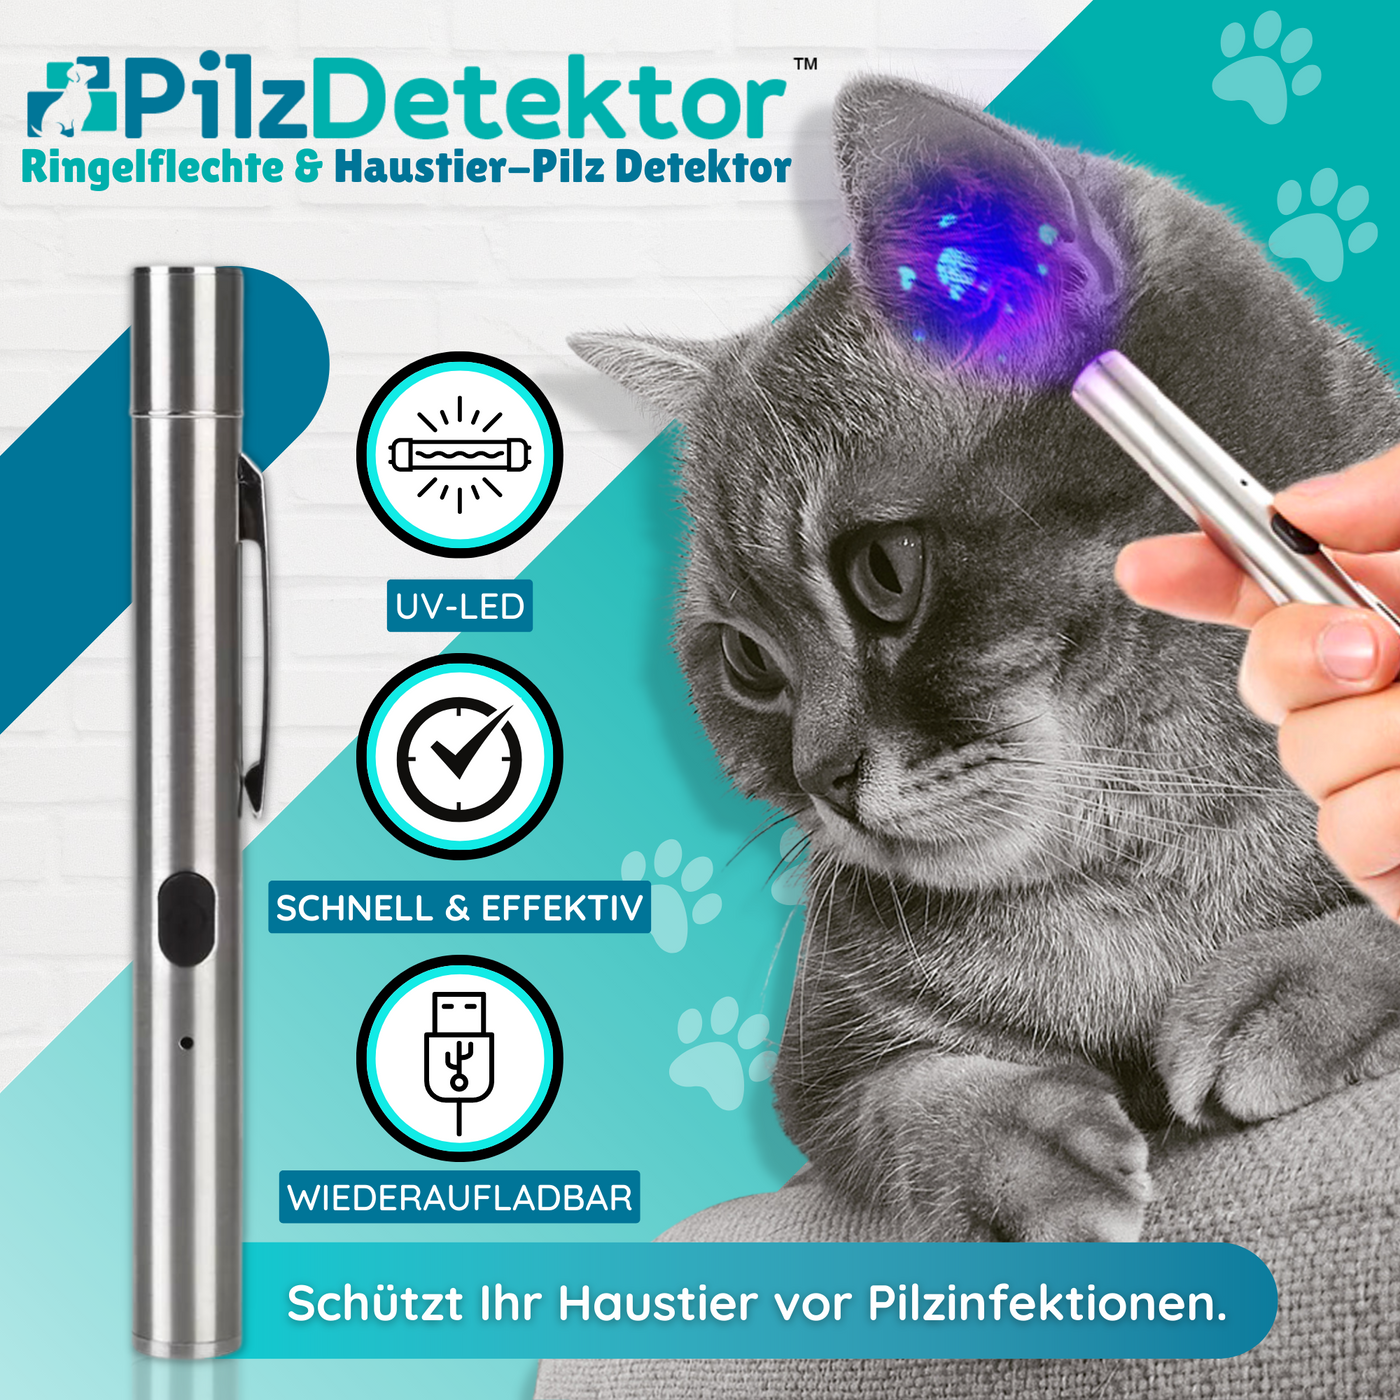 Holen Sie sich 2 Packungen PilzDetektor™ Ringelflechte & Haustier-Pilz Detektor mit 75% Rabatt!